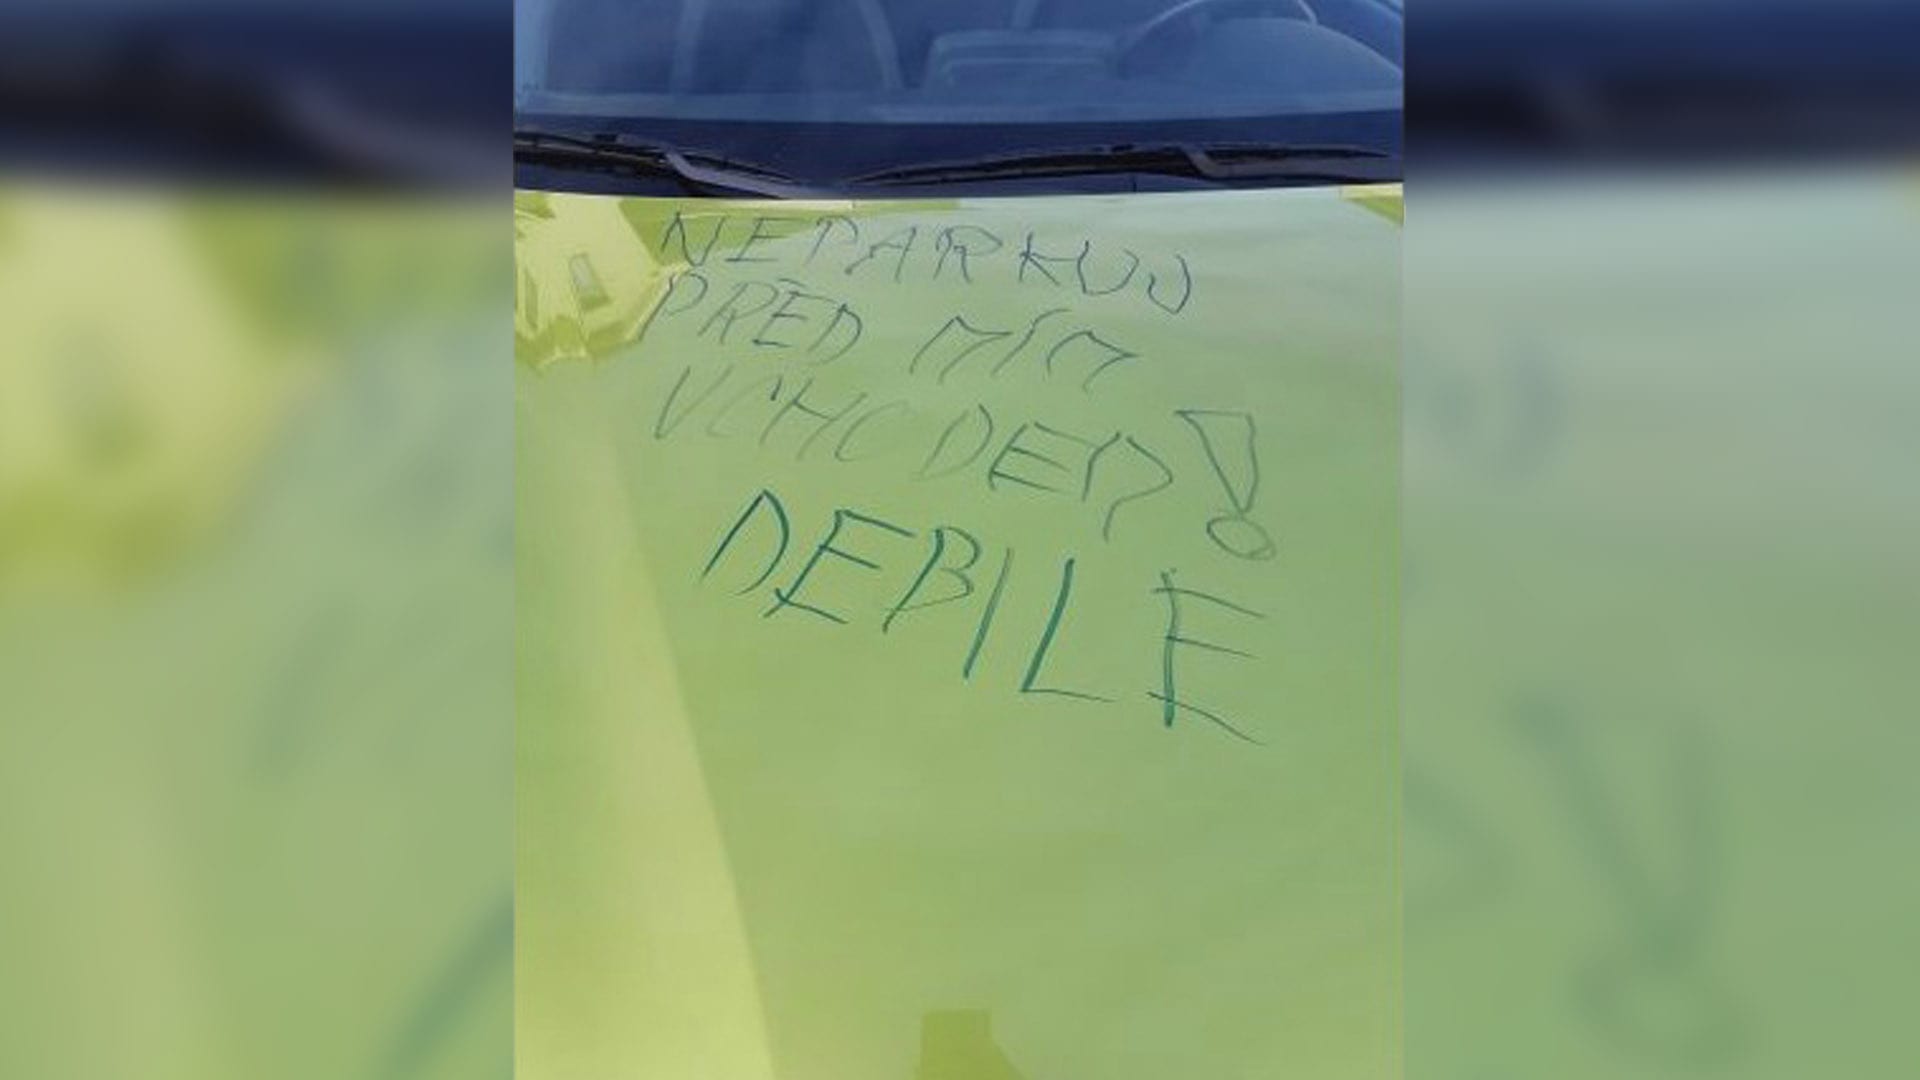 Neznámý pachatel napsal 61leté ženě na kapotu jejího vozu vzkaz.